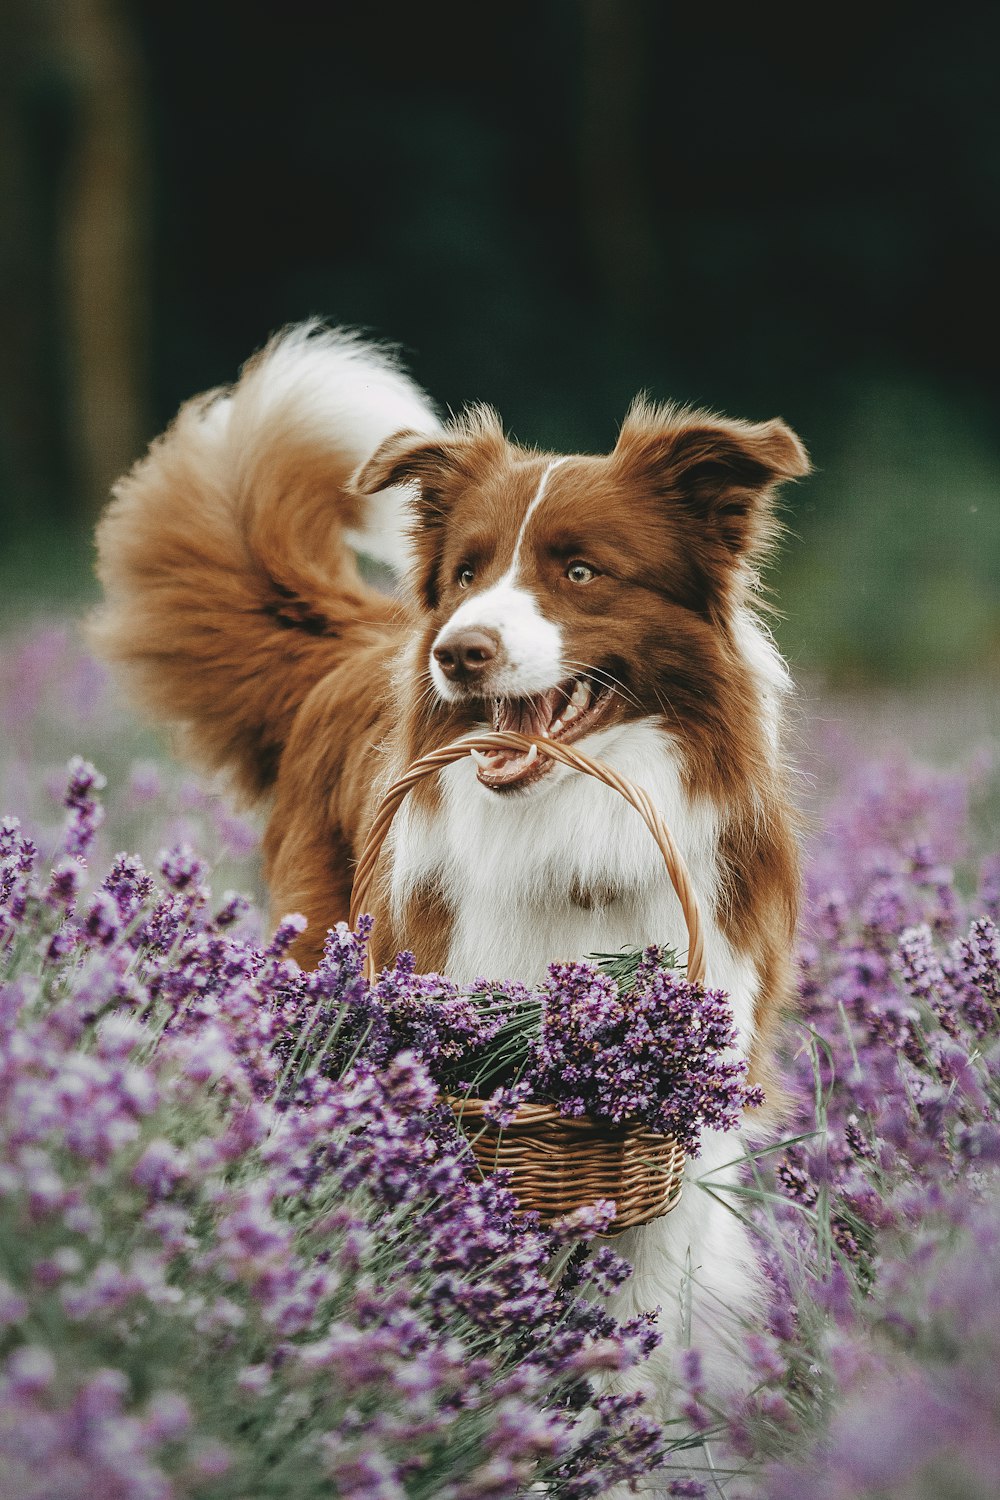 a dog in a field of purple flowers